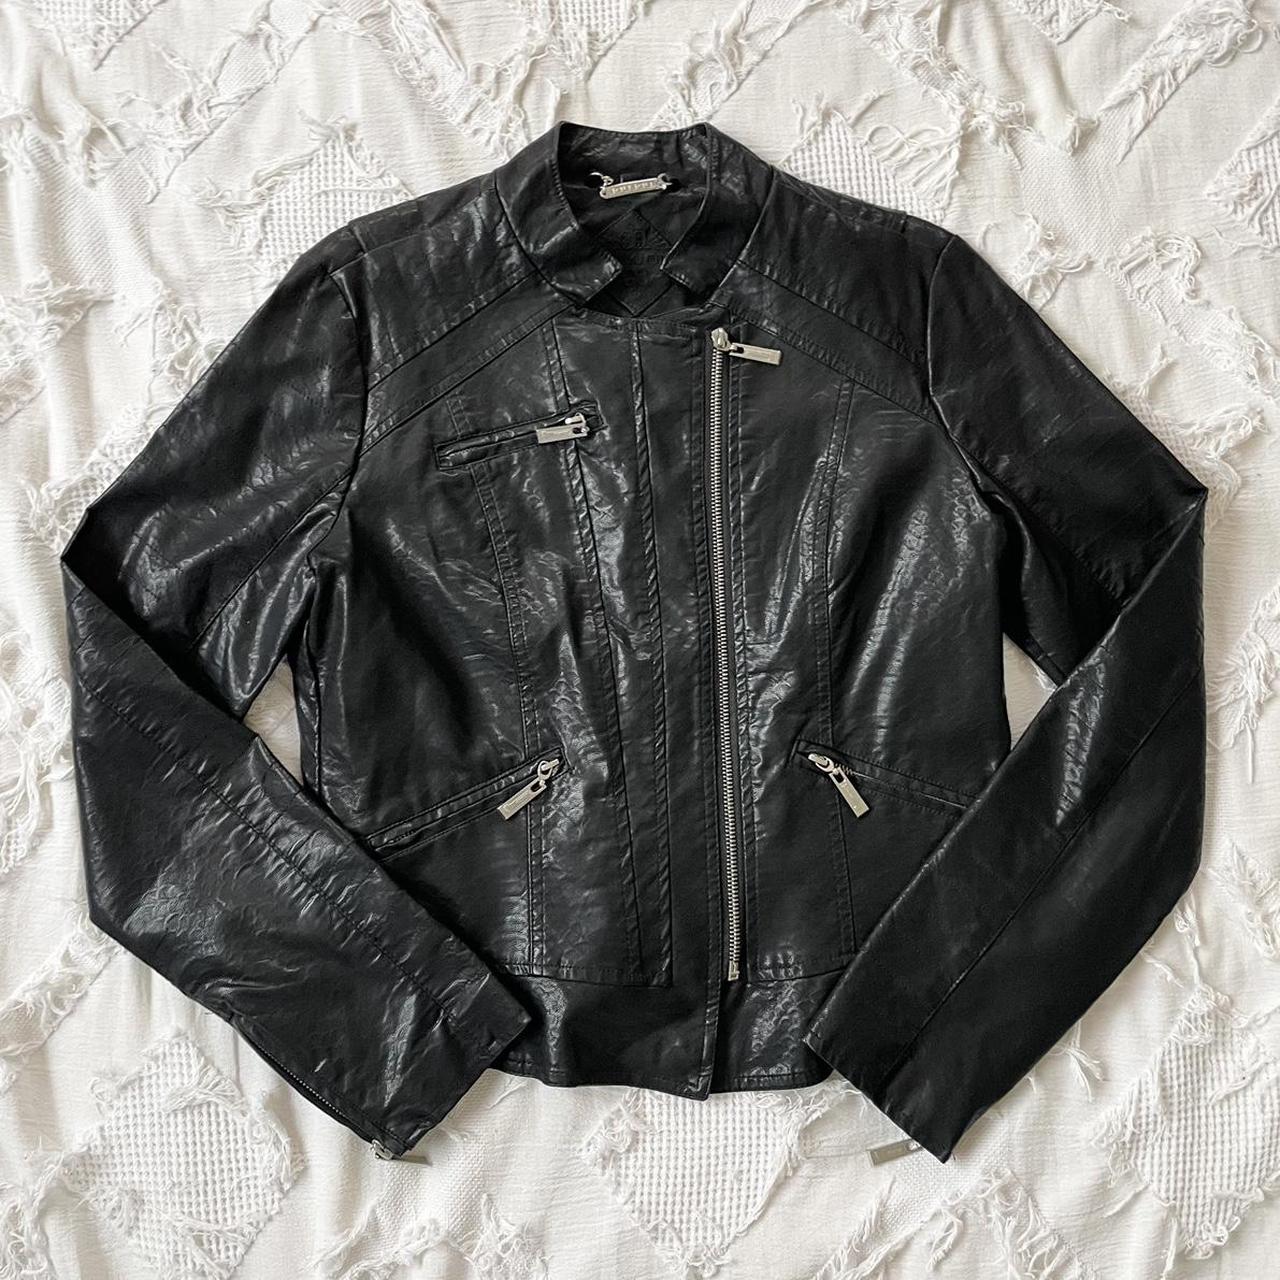 Leather jacket Vintage 2000s biker babe leather... - Depop